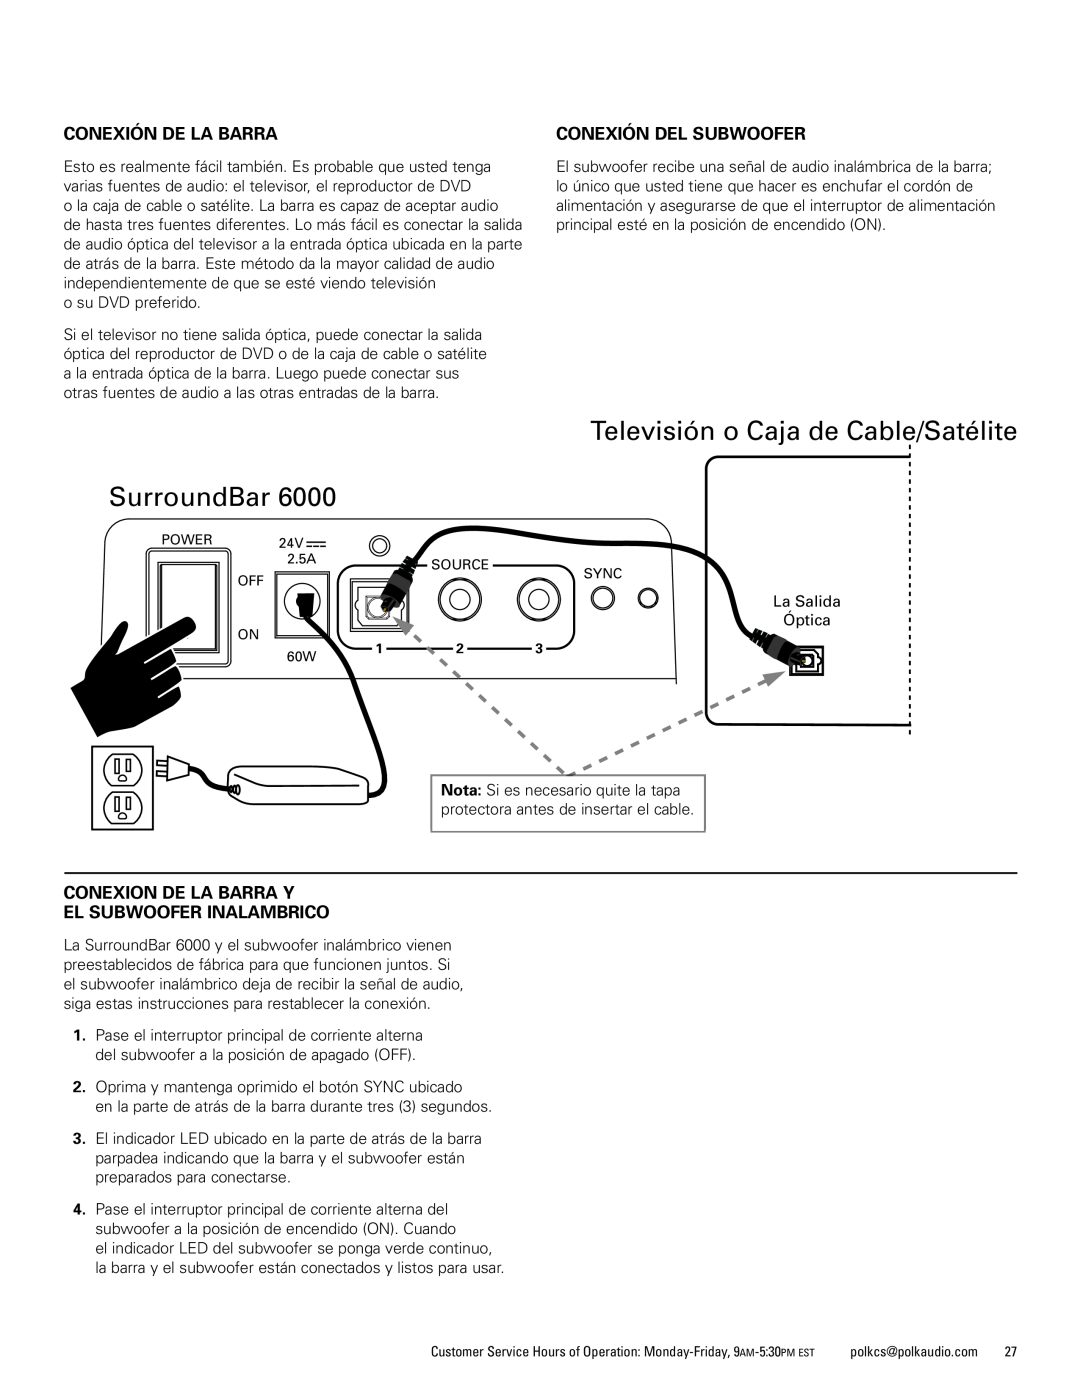 Polk Audio 6000 manual Televisión o Caja de Cable/Satélite SurroundBar, Conexión De La Barra, Conexión Del Subwoofer 